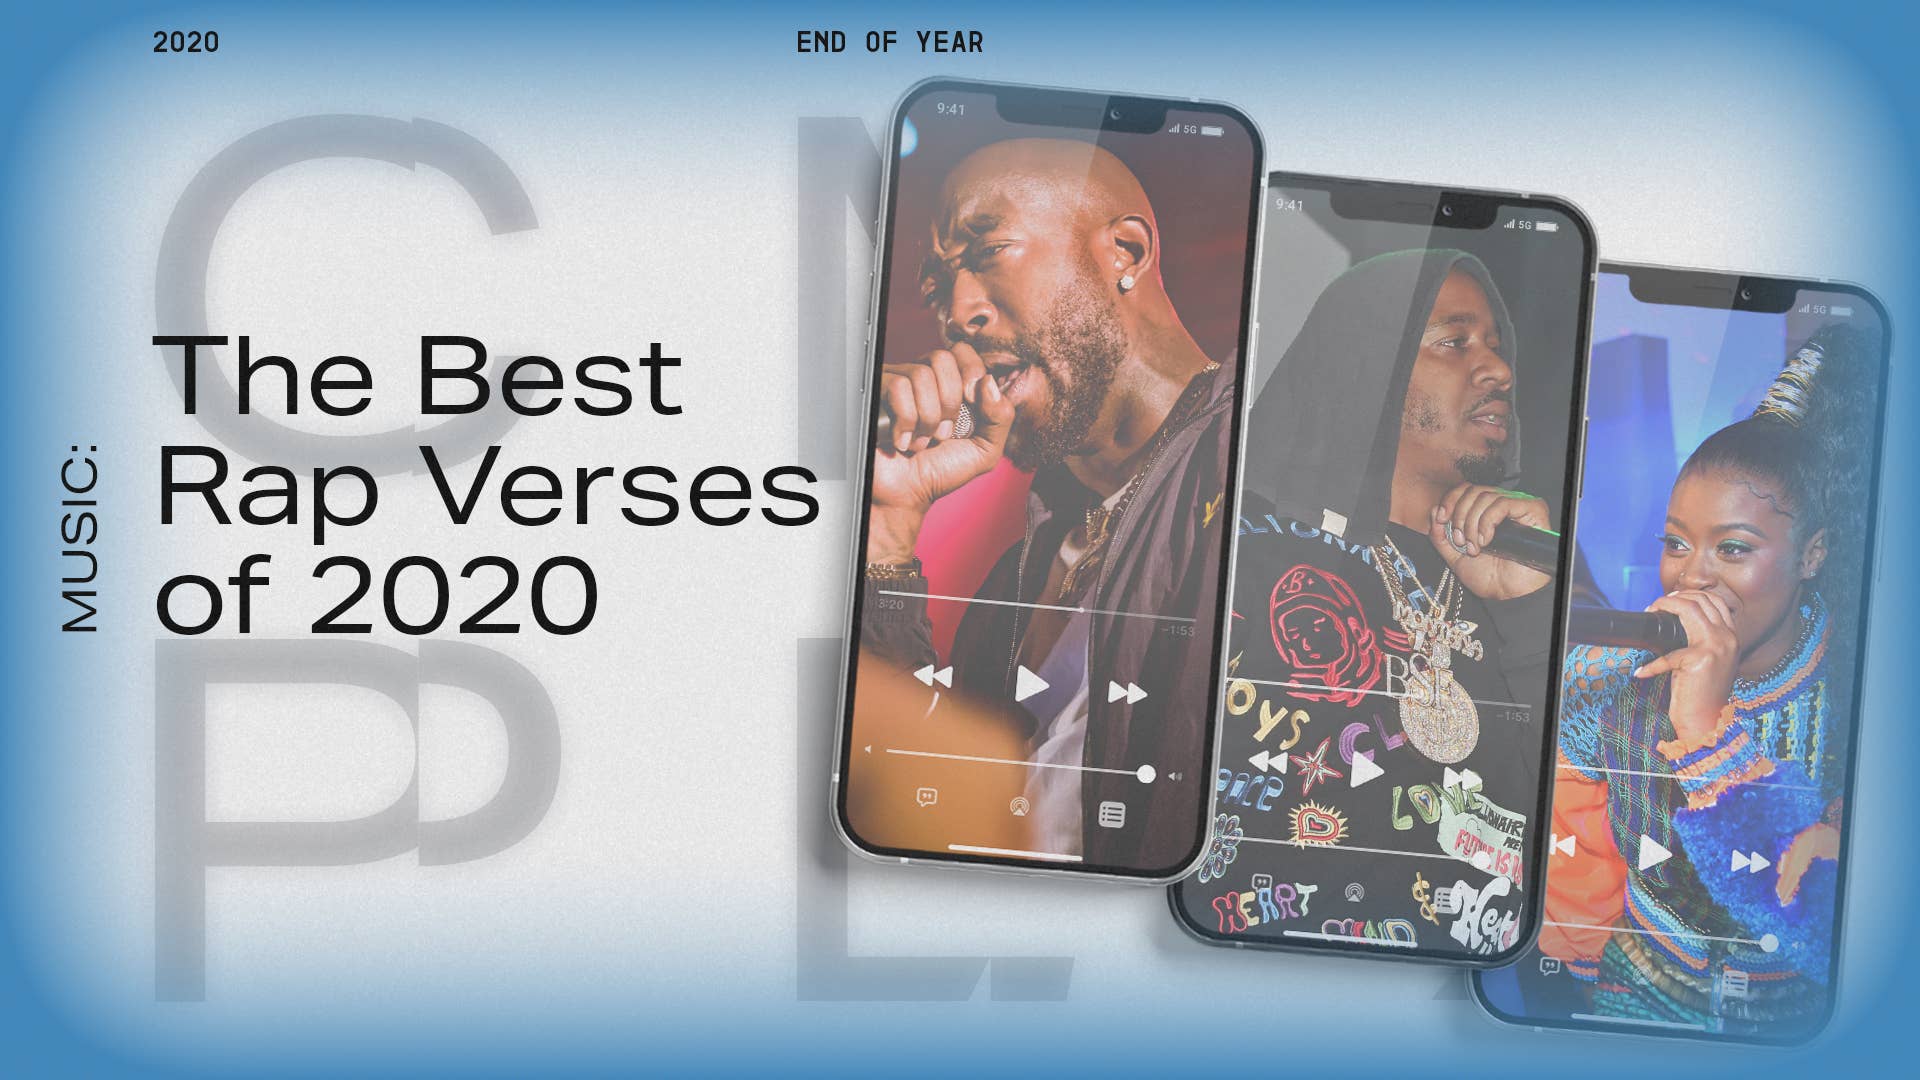 bes rap verses 2020 lead